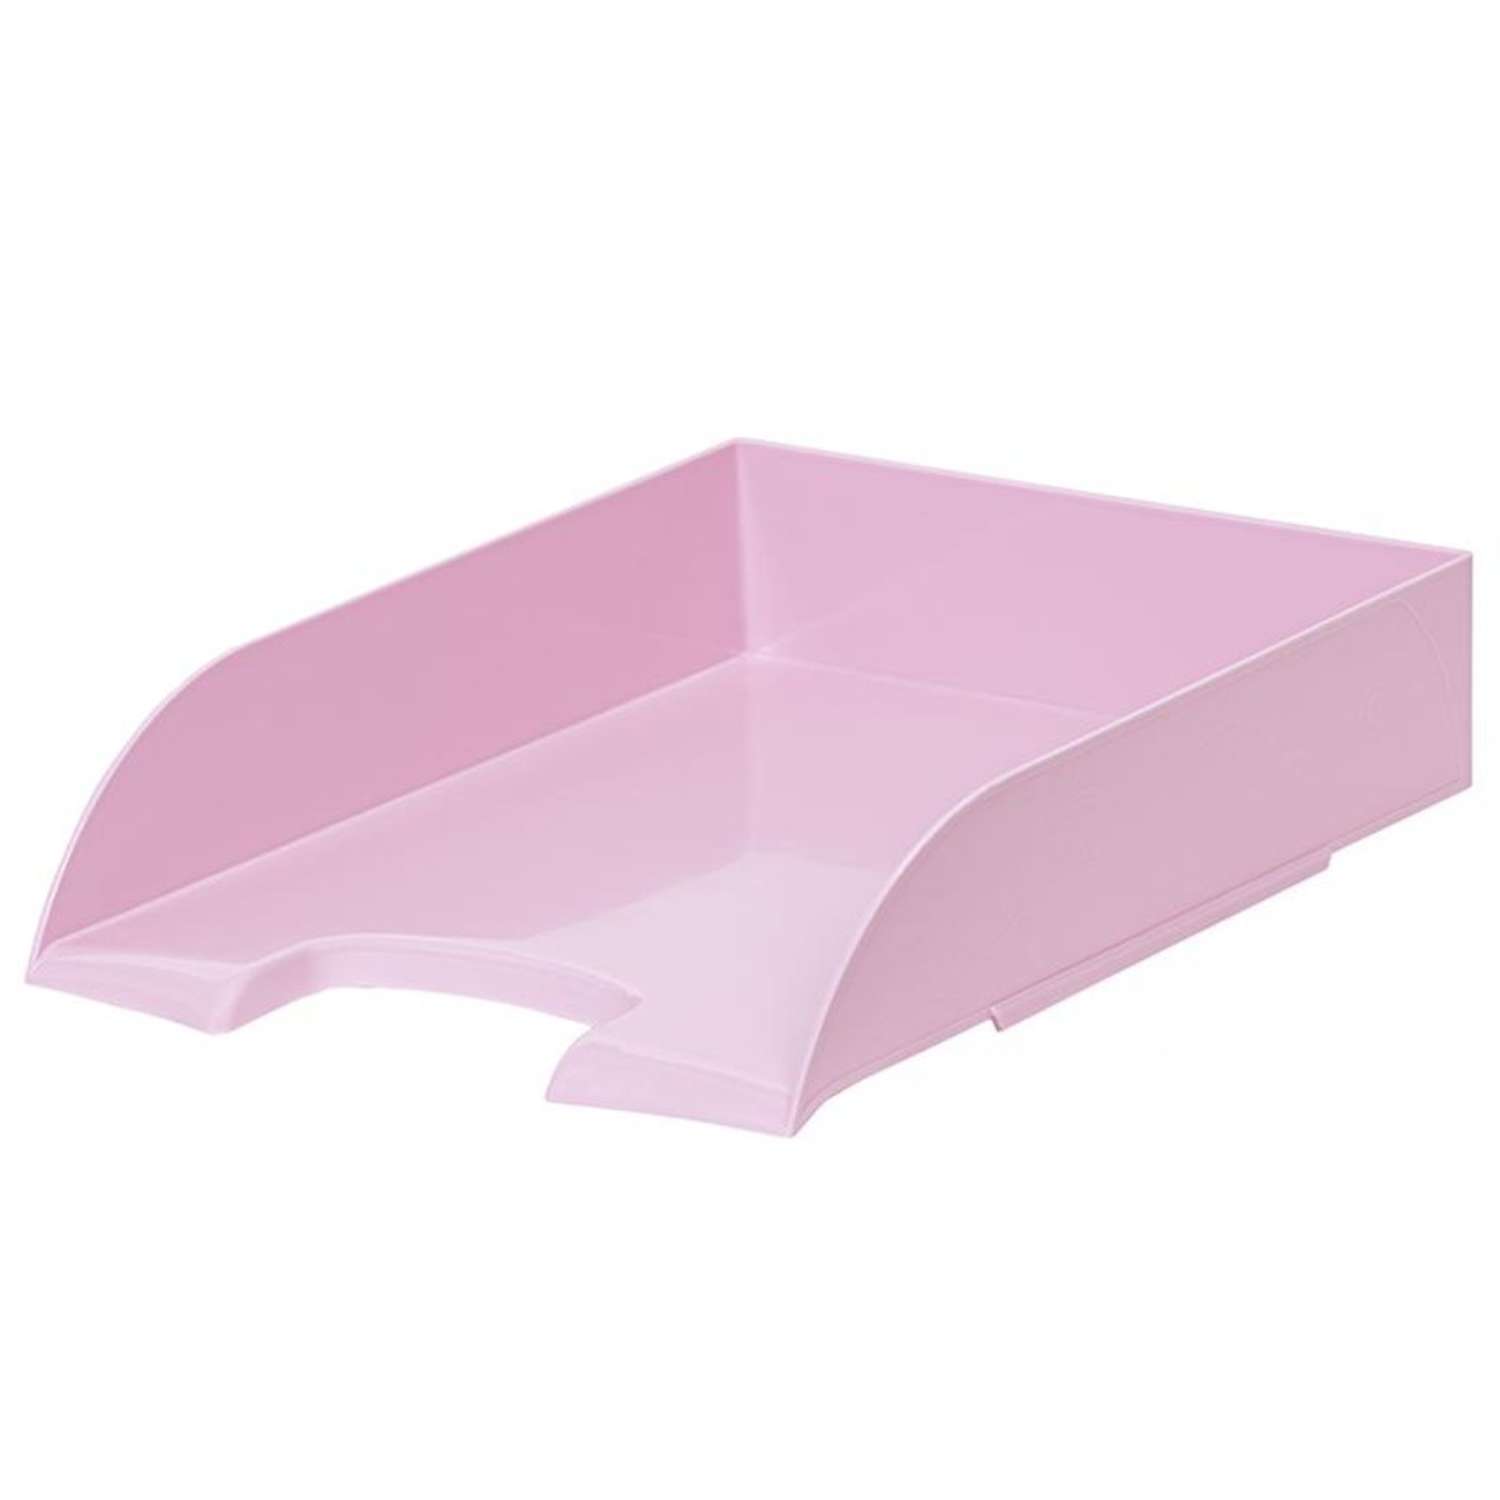 Лоток Attache для бумаг Selection Flamingo прозрачный розовый 1 шт - фото 1